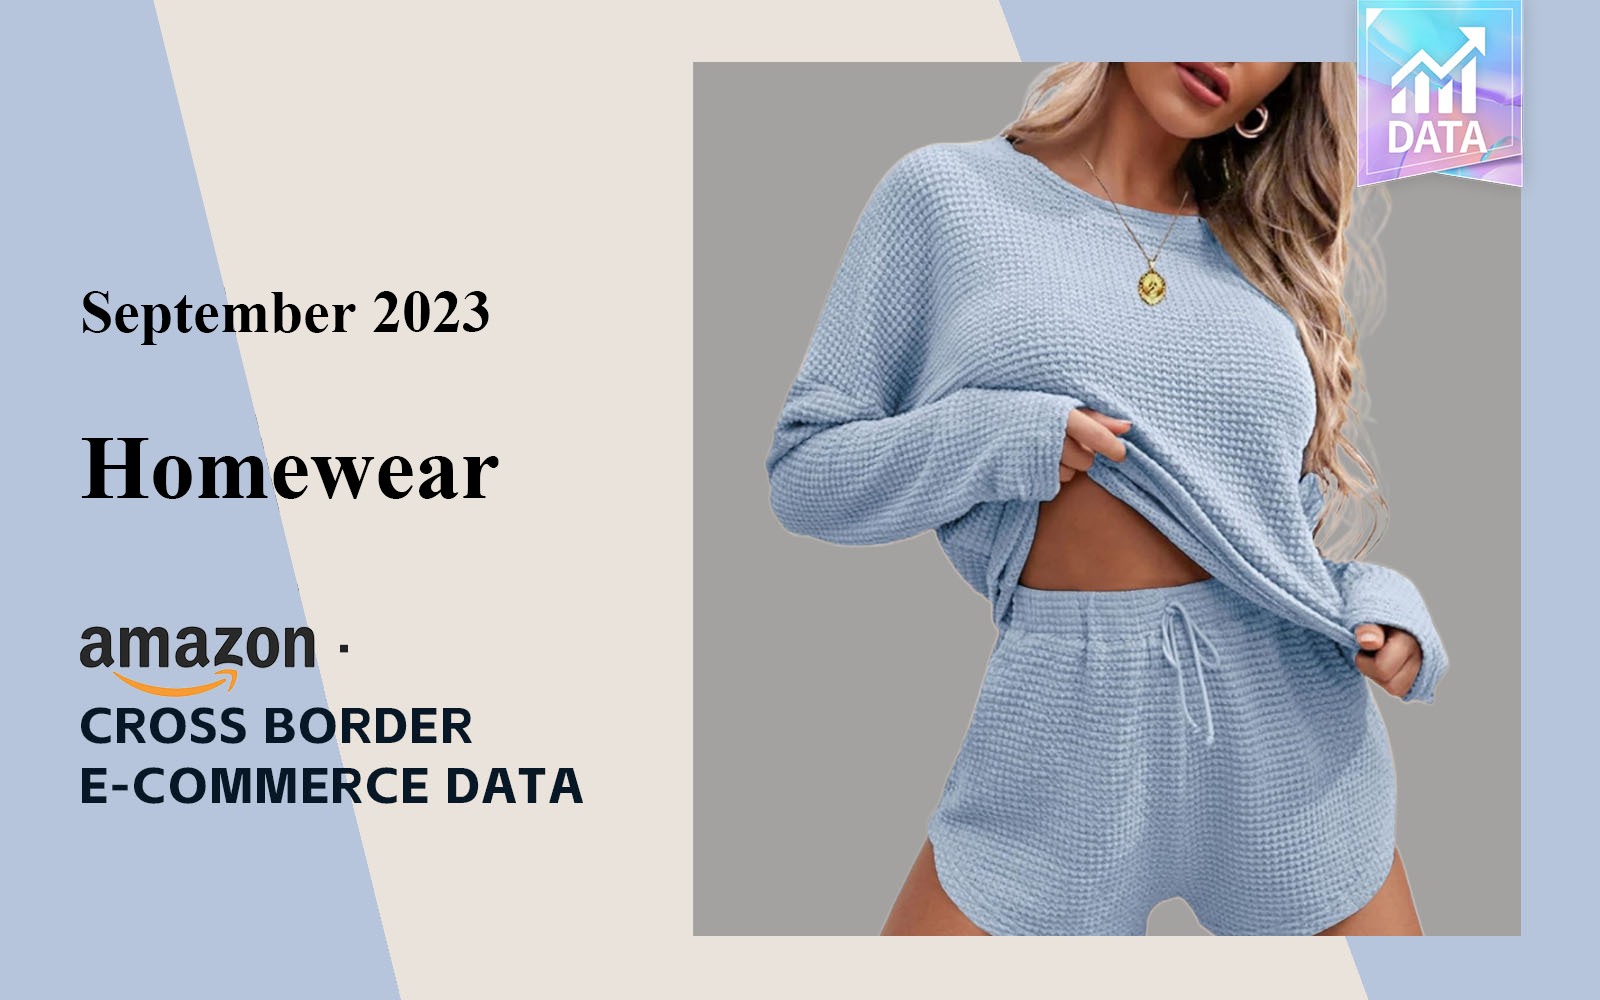 Analysis of Cross border E-commerce Data for Women's Homewear in September